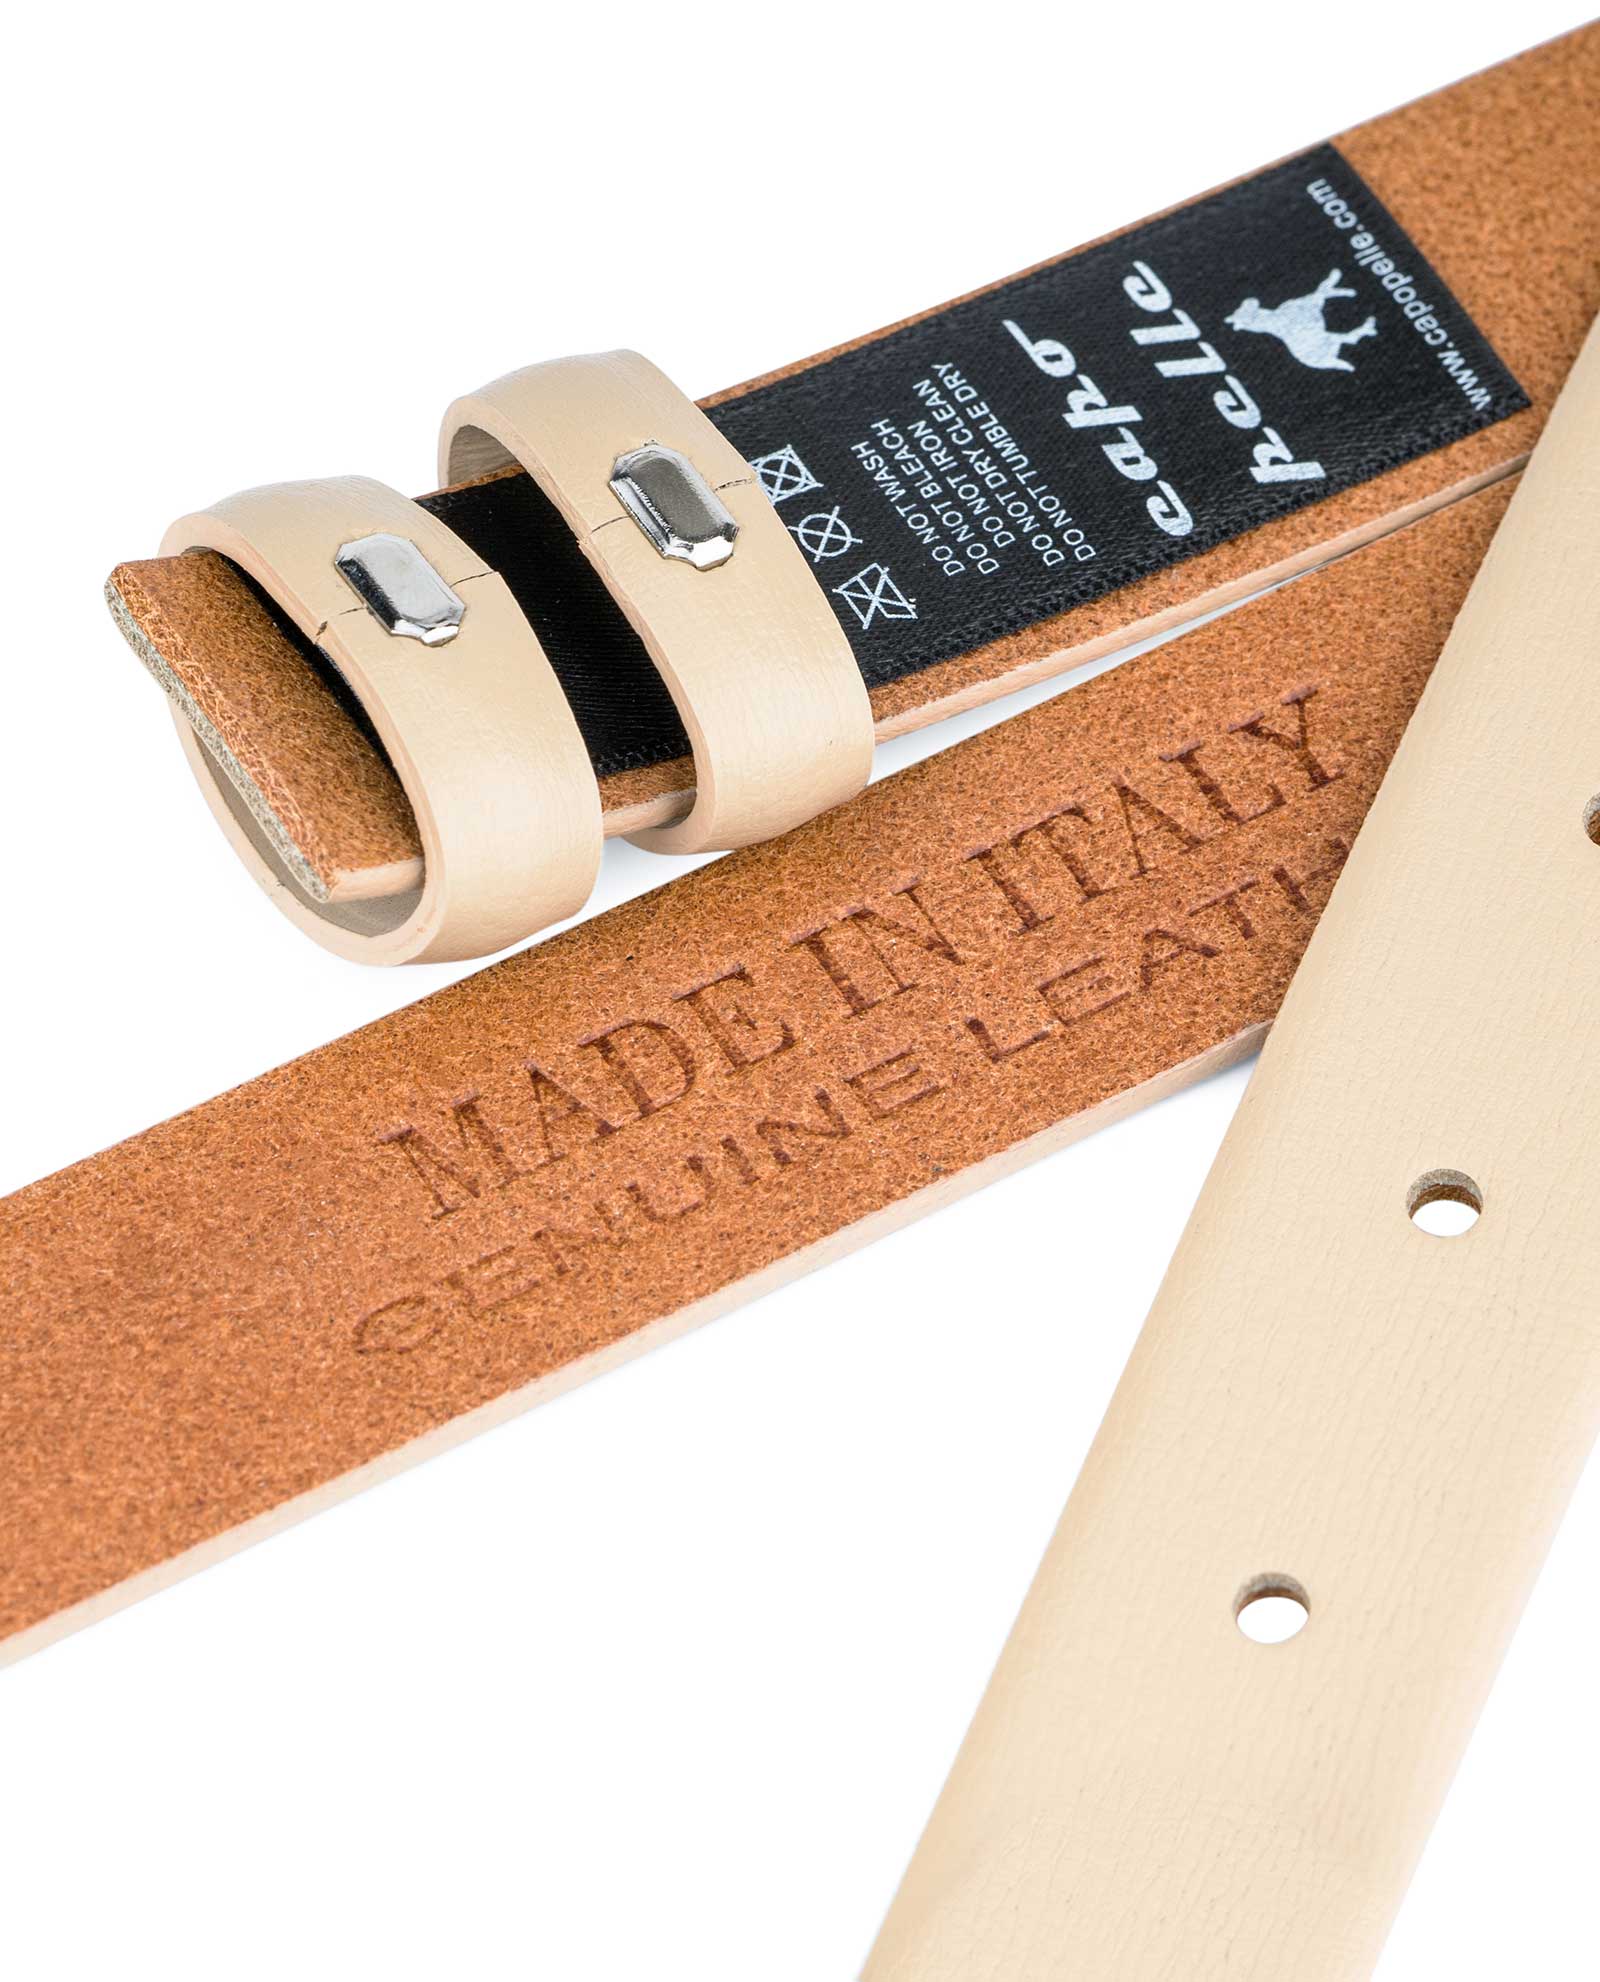 Buy Leather Belt Blank Strip- 13 Mm Veg Tan Beige - LeatherBeltsOnline